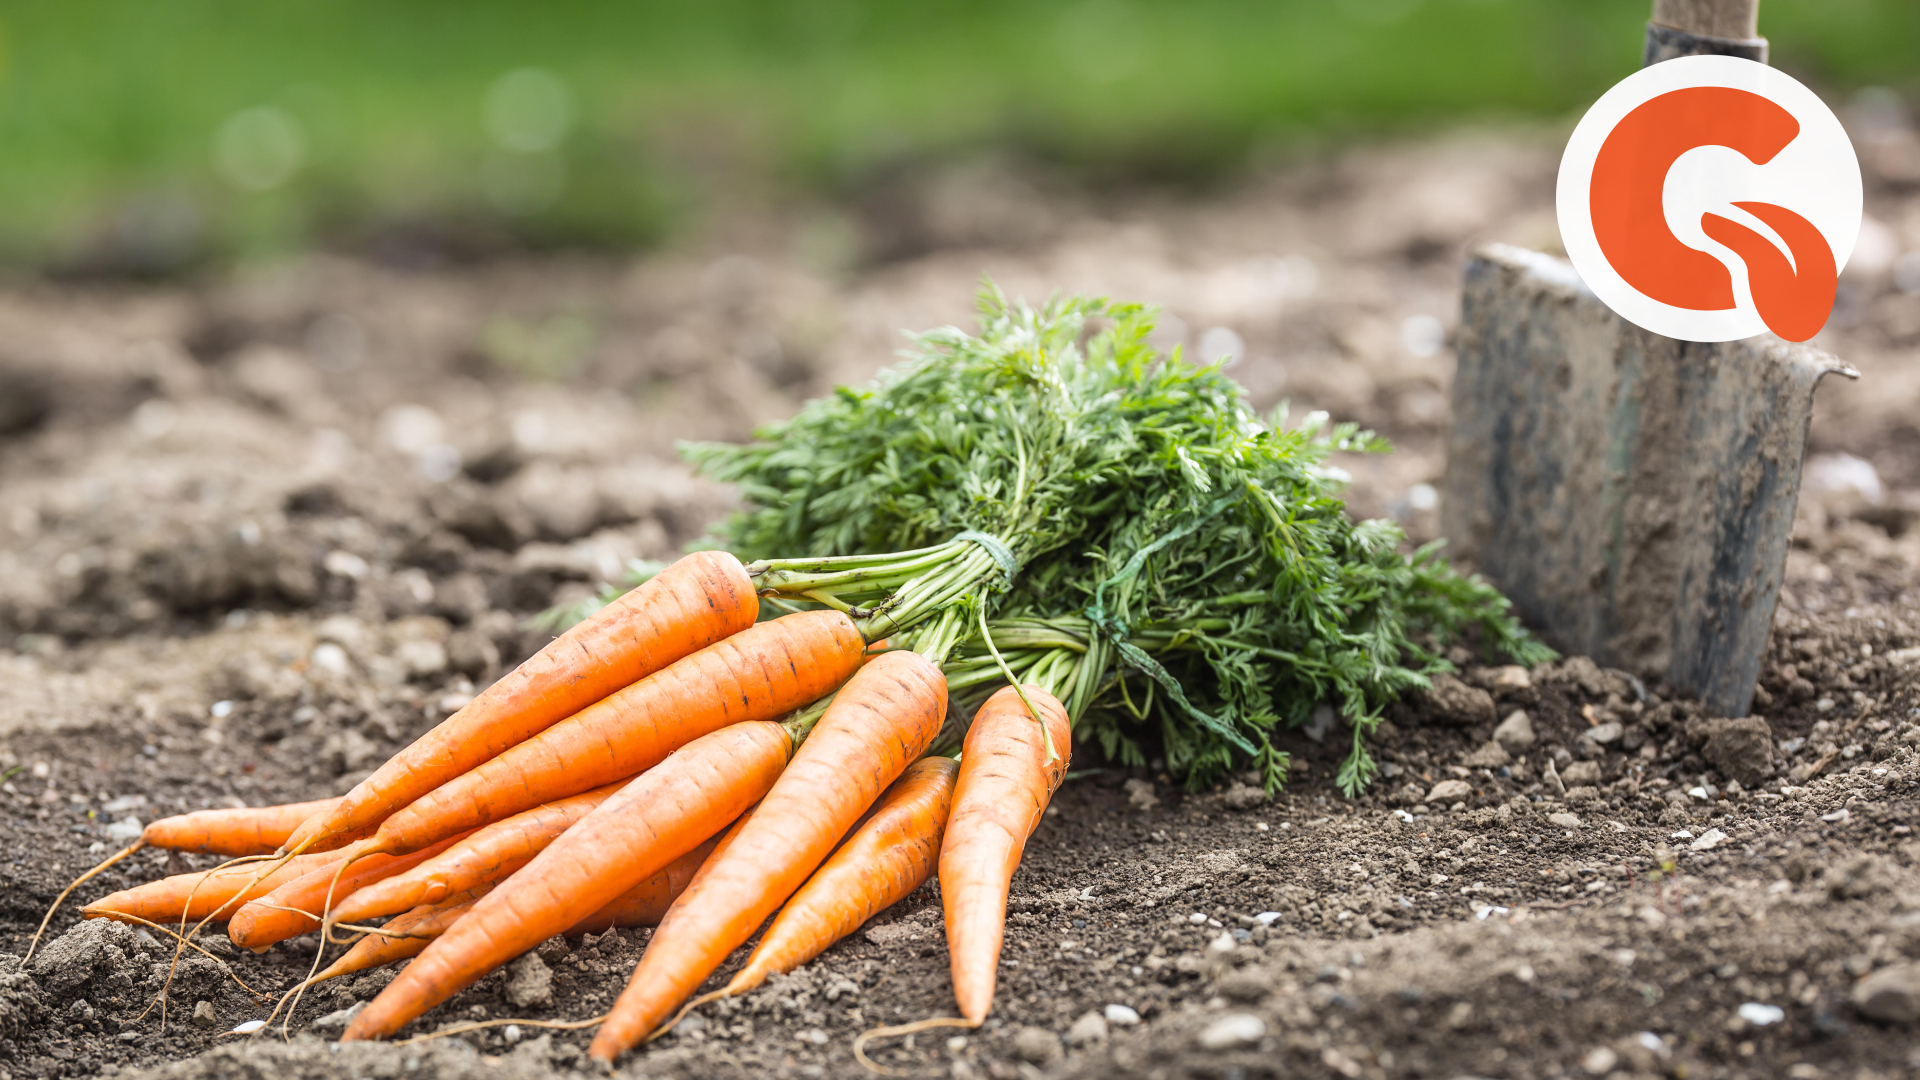 Сеем морковь картинка. Картинки где сеют морковку. Правильный посев для хорошего урожая моркови. Как удобно посеять морковь.